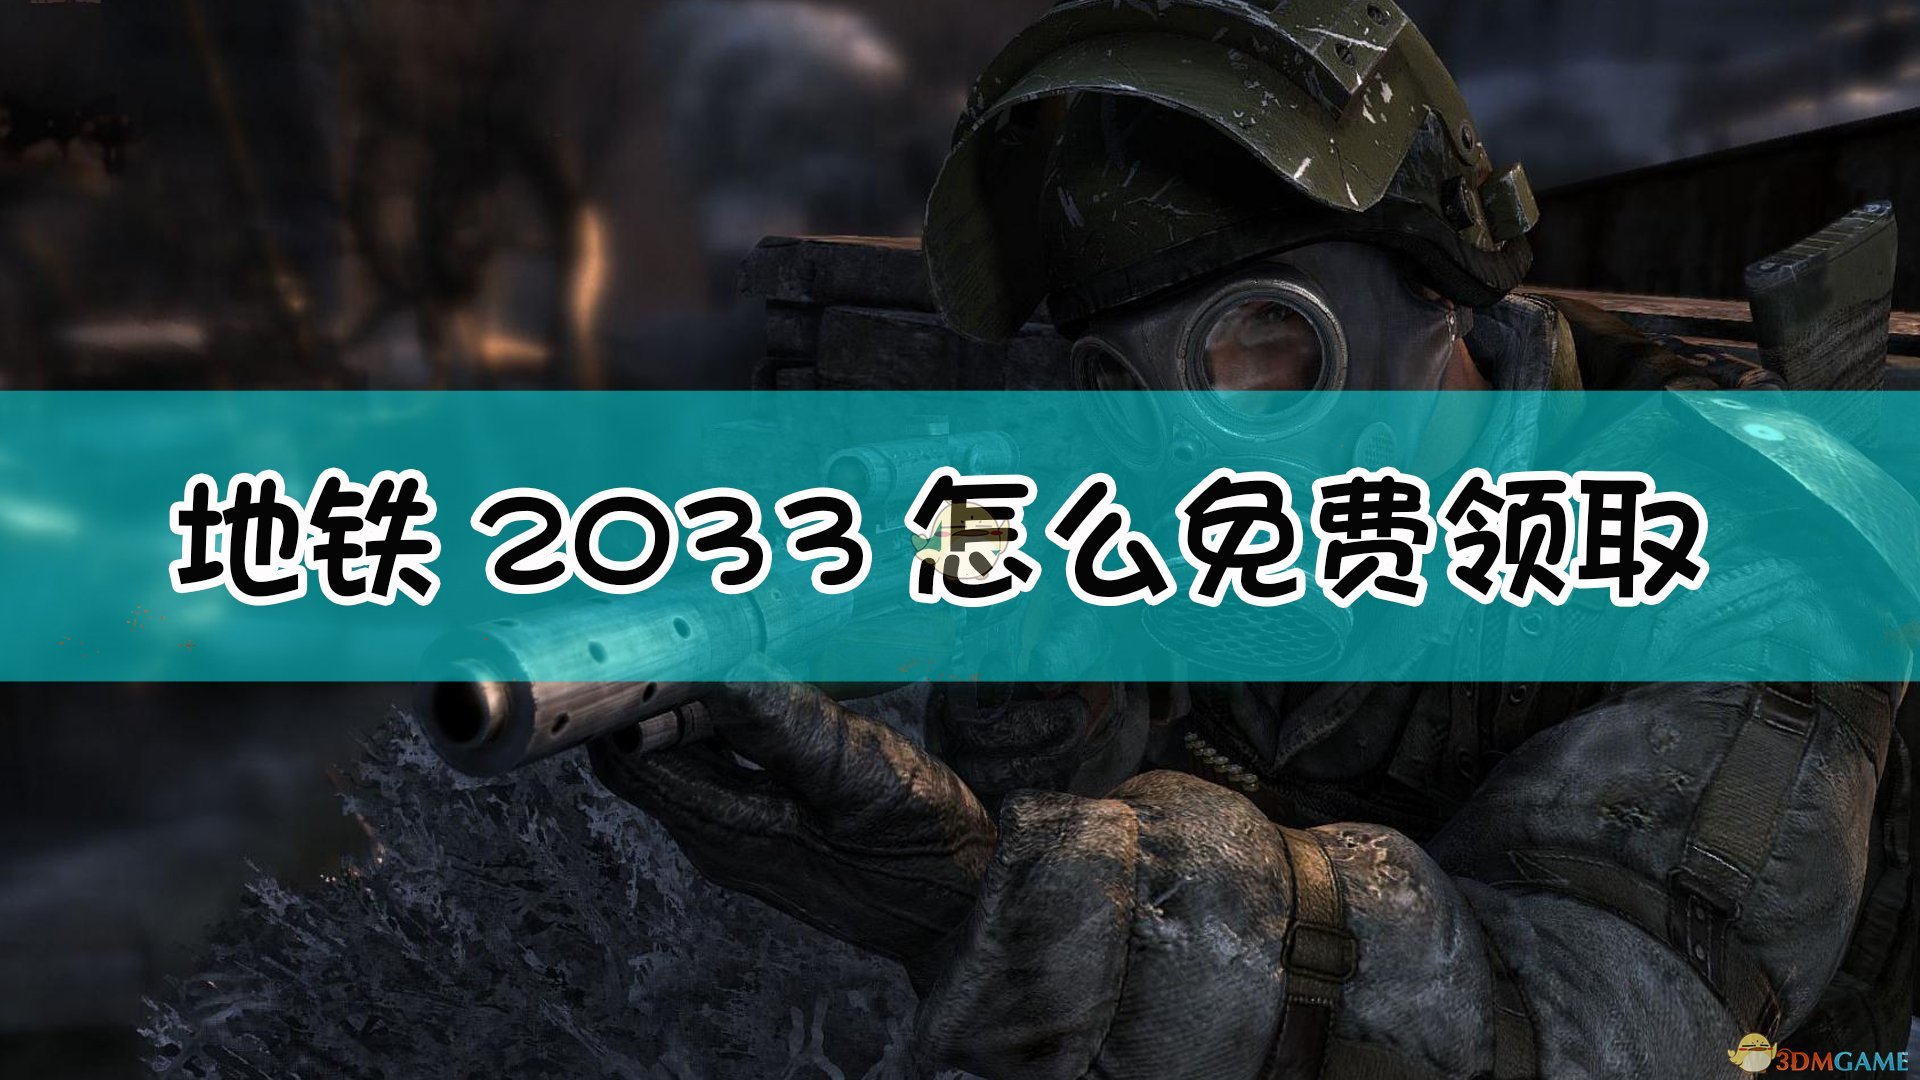 《戰慄深隧2033》steam免費領取方法介紹